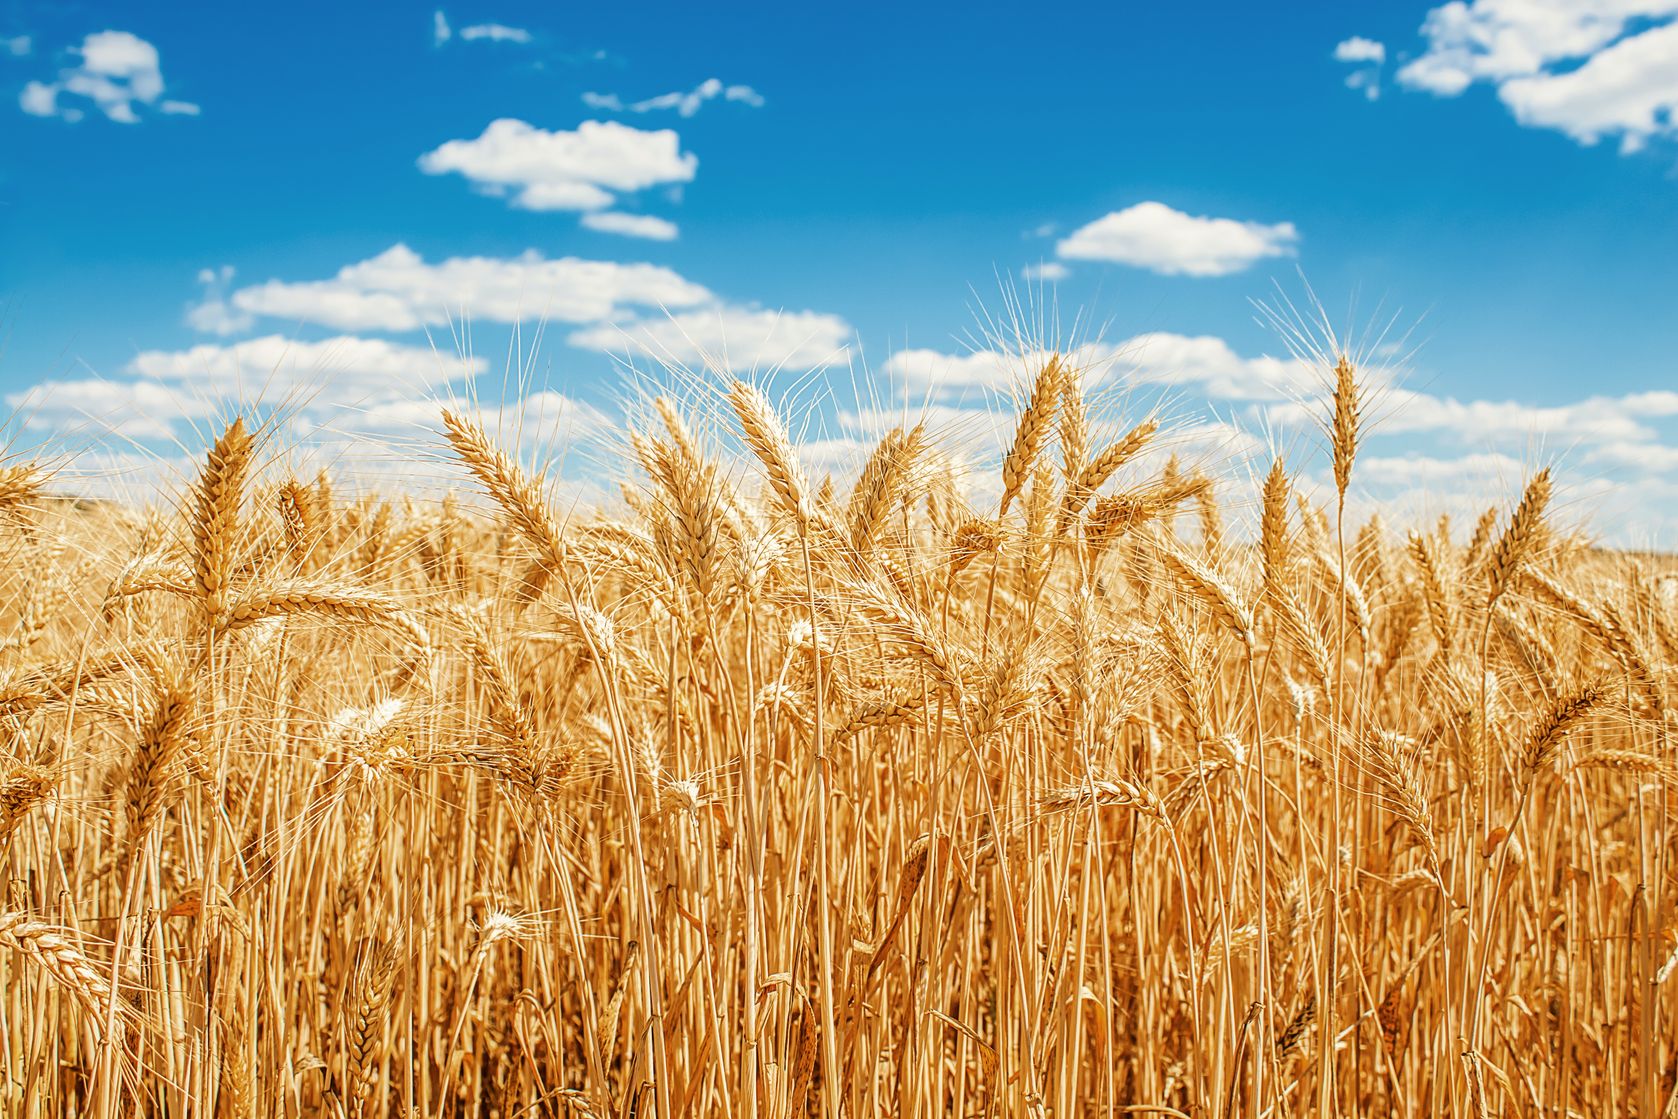 Wheat field on blue sky